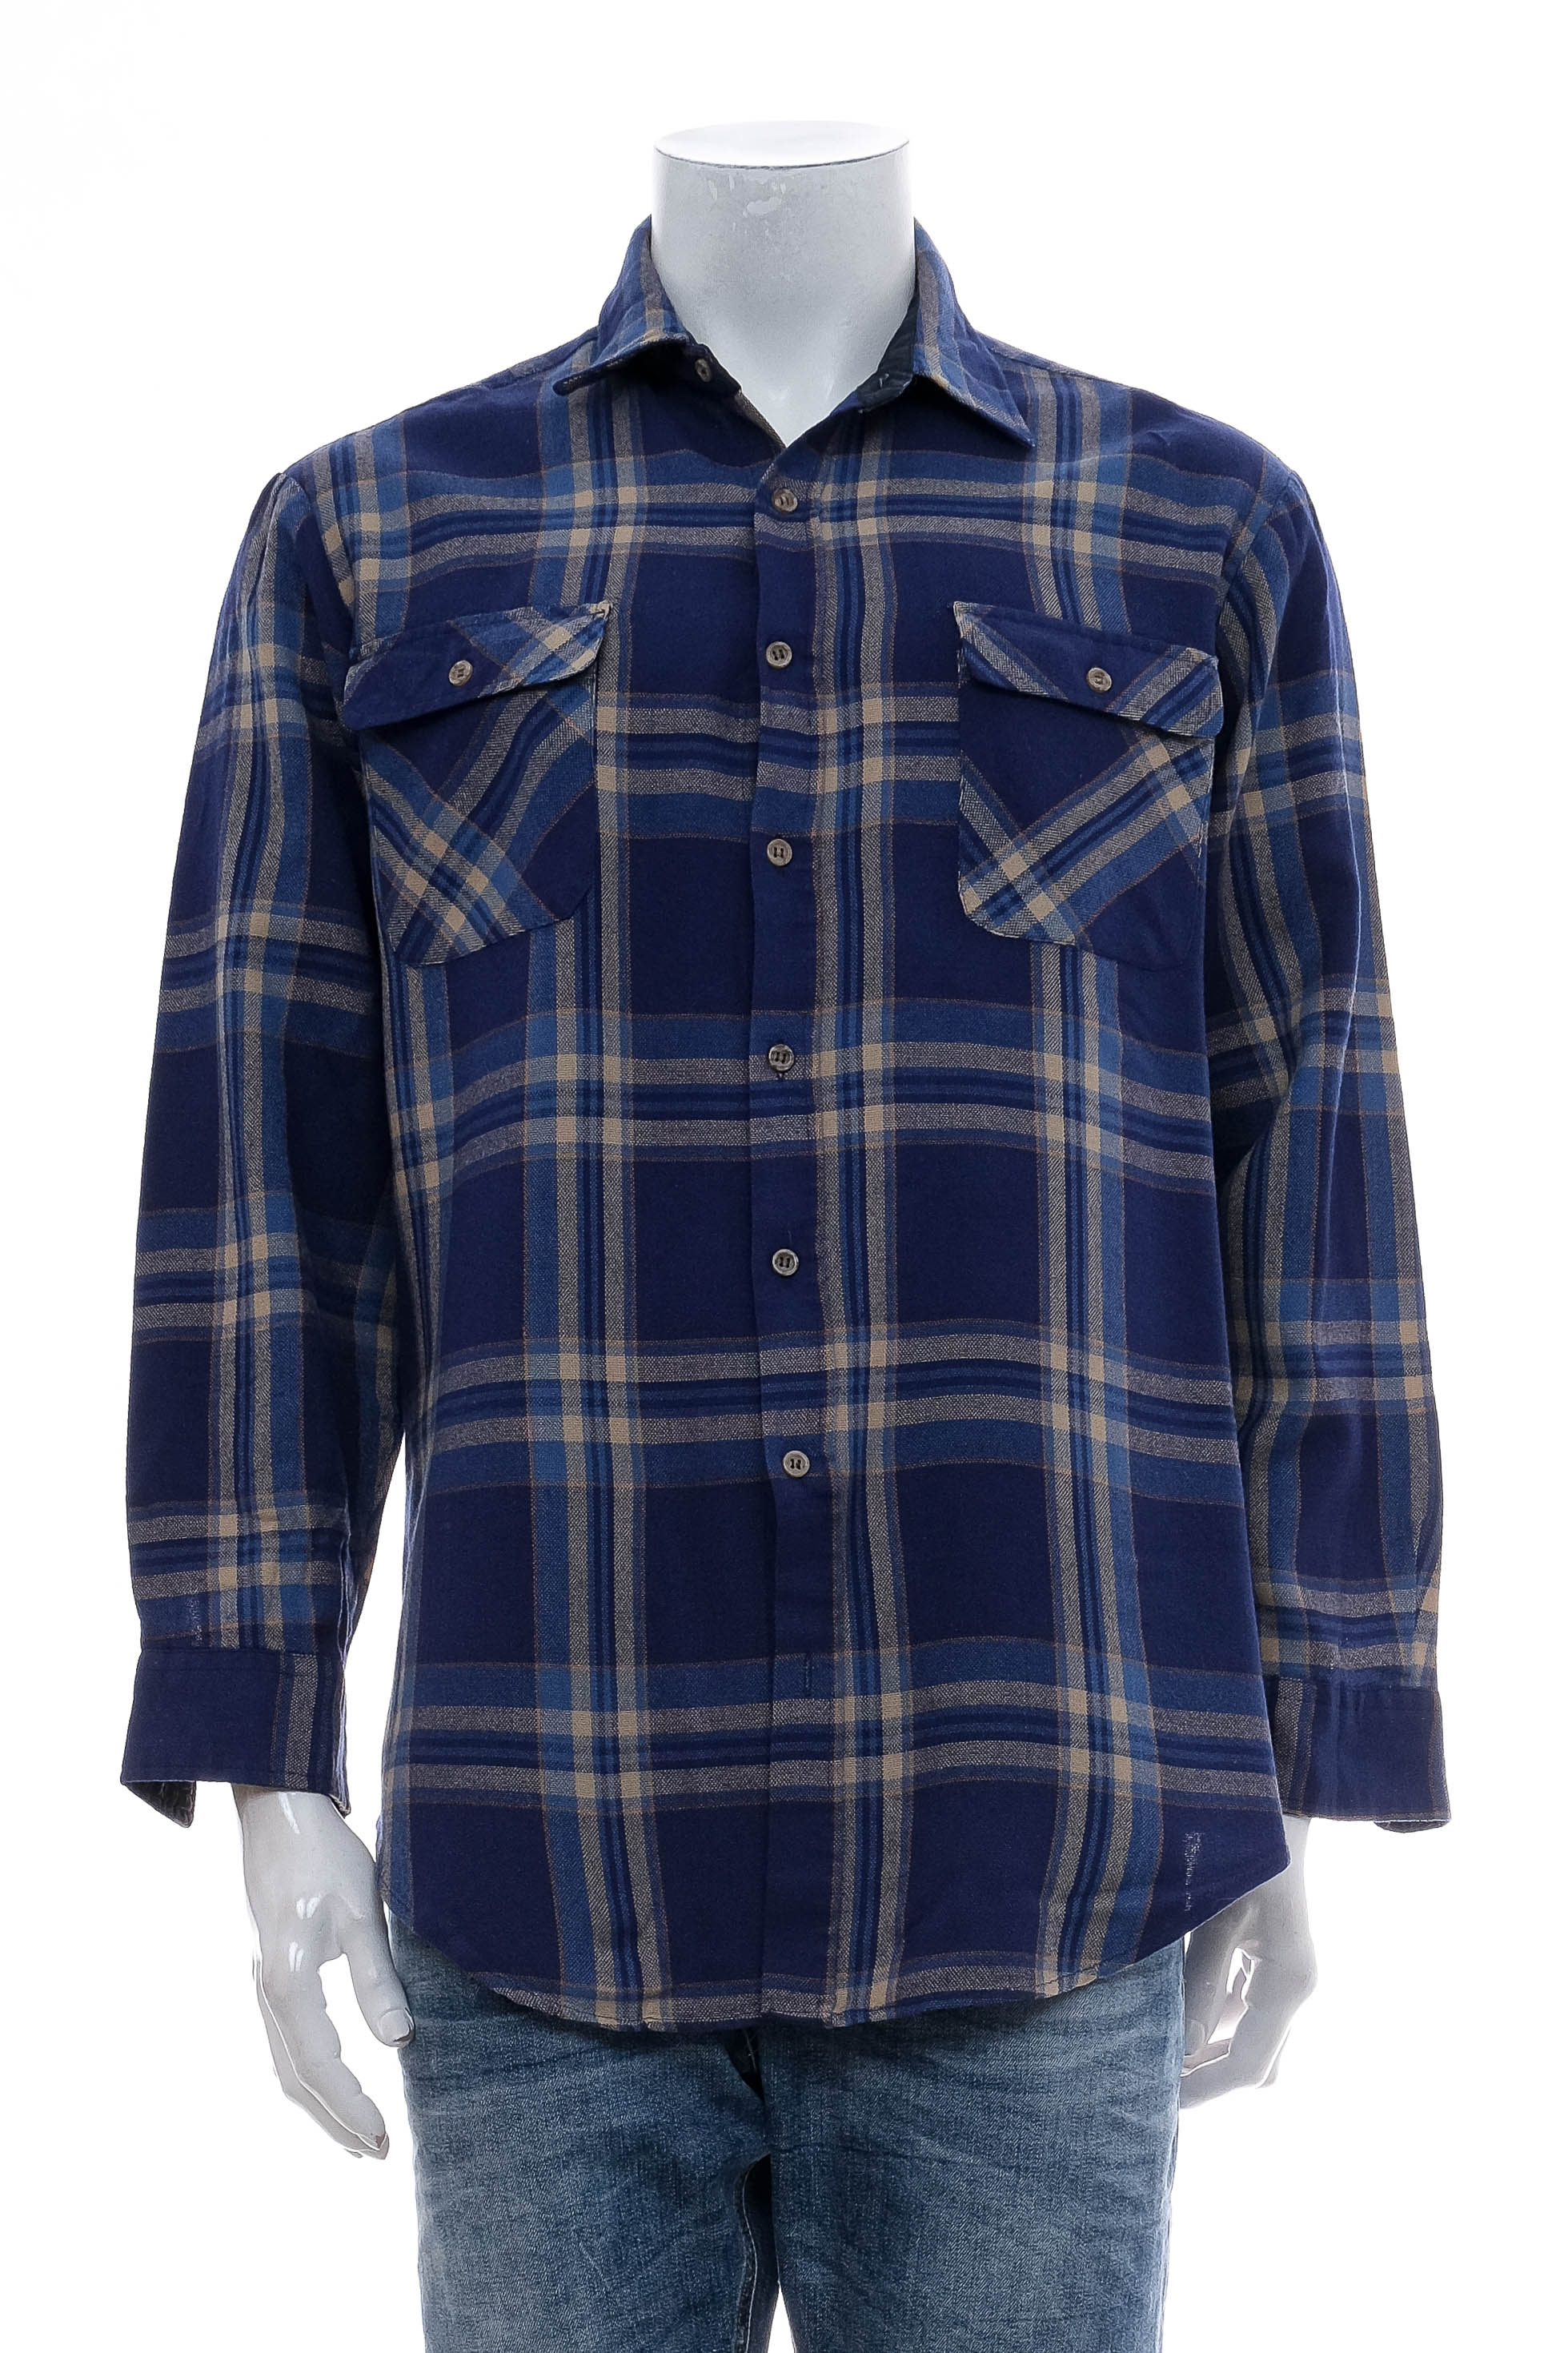 Ανδρικό πουκάμισο - Outdoor Exchange - 0